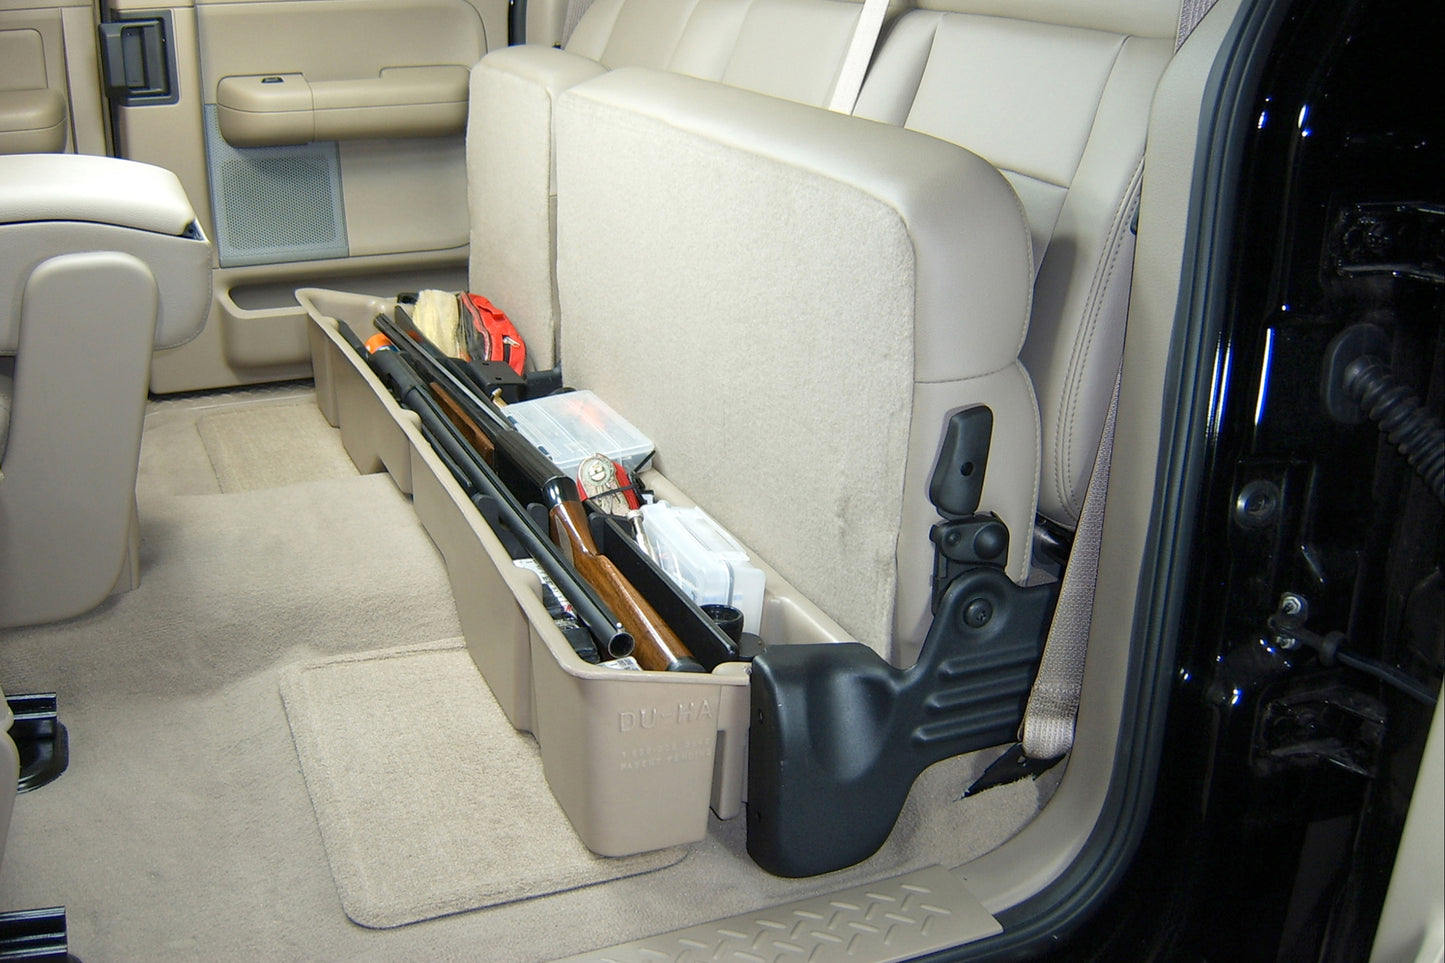 DU-HA 20004 Ford Underseat Storage Console Organizer And Gun Case - Black